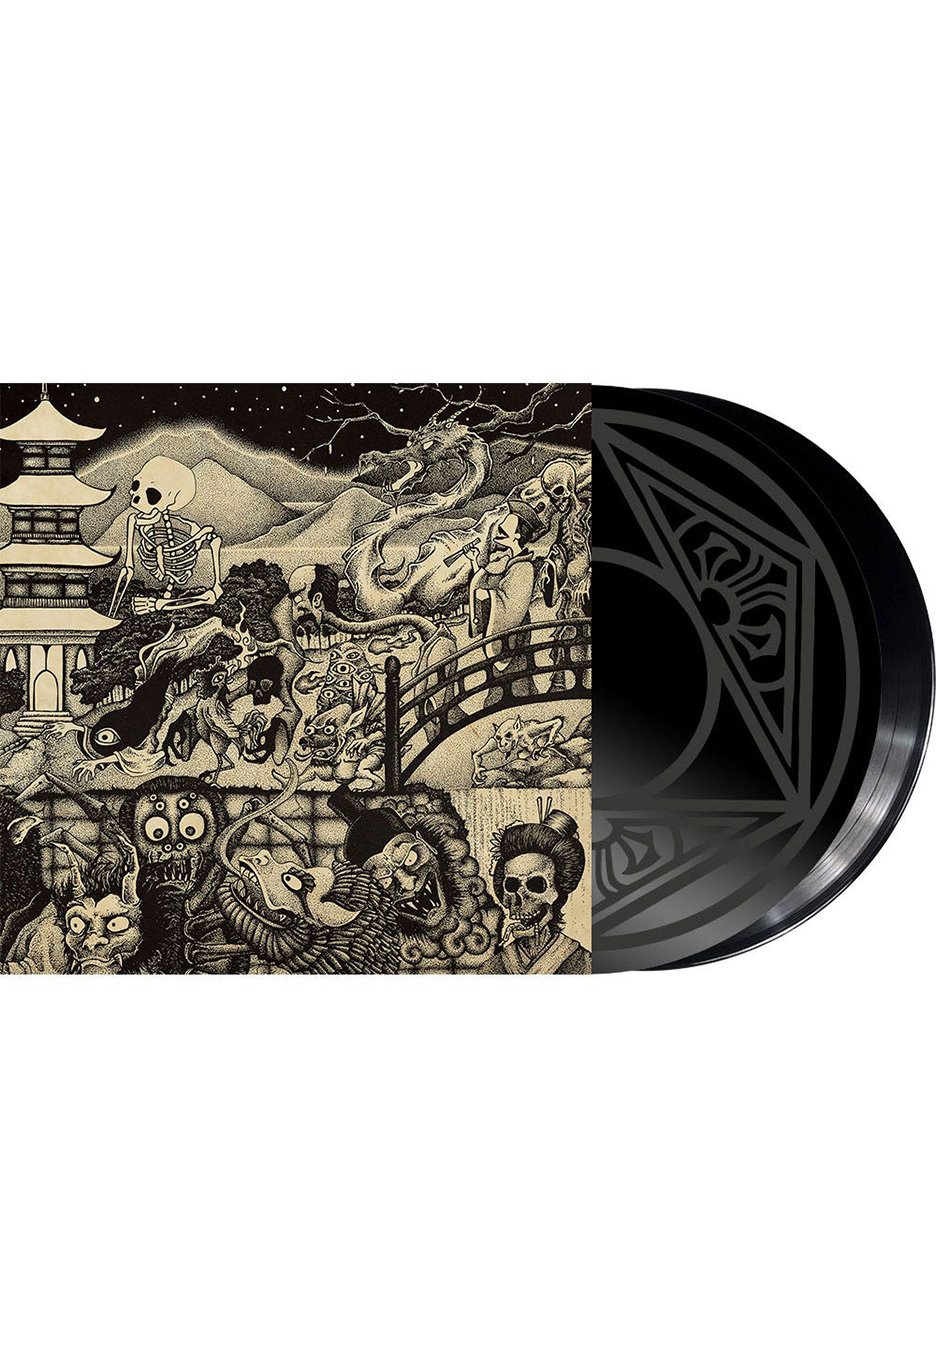 Earthless - Night Parade Of One Hundred Demons - 2 Vinyl